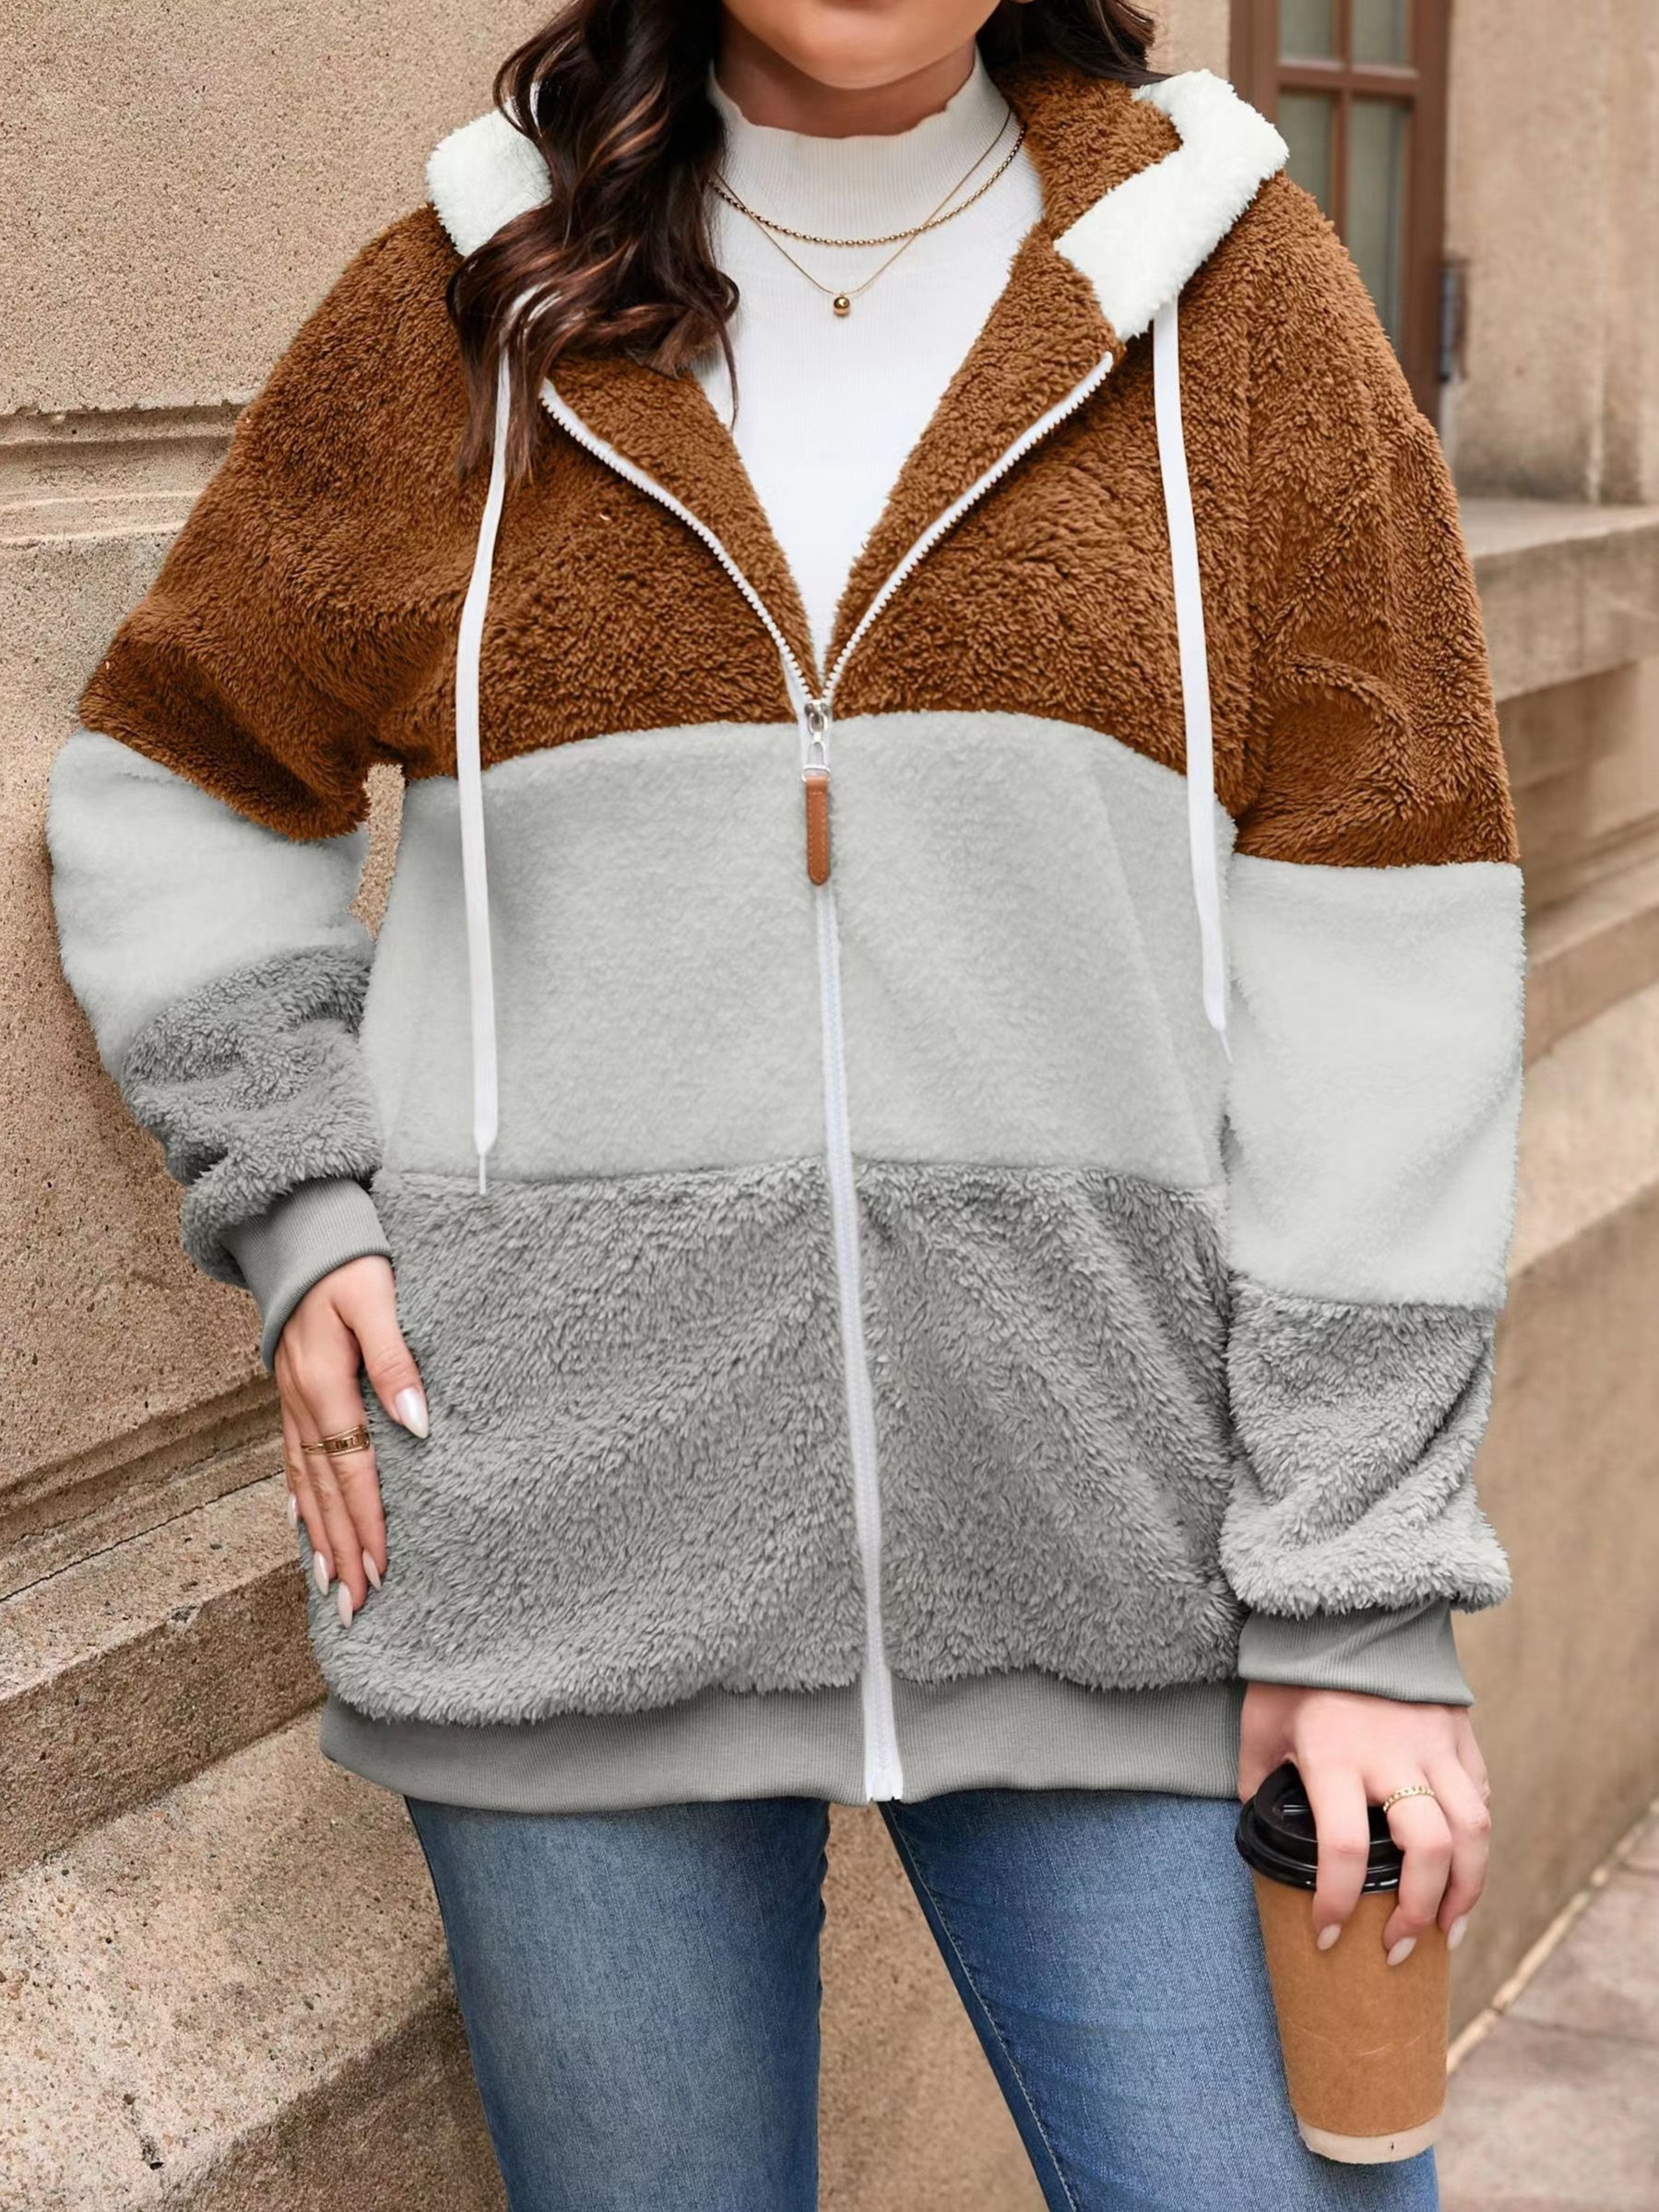 Women Fuzzy Coat / Oversize Hooded Teddy Jacket,Teddy Coat, Winter